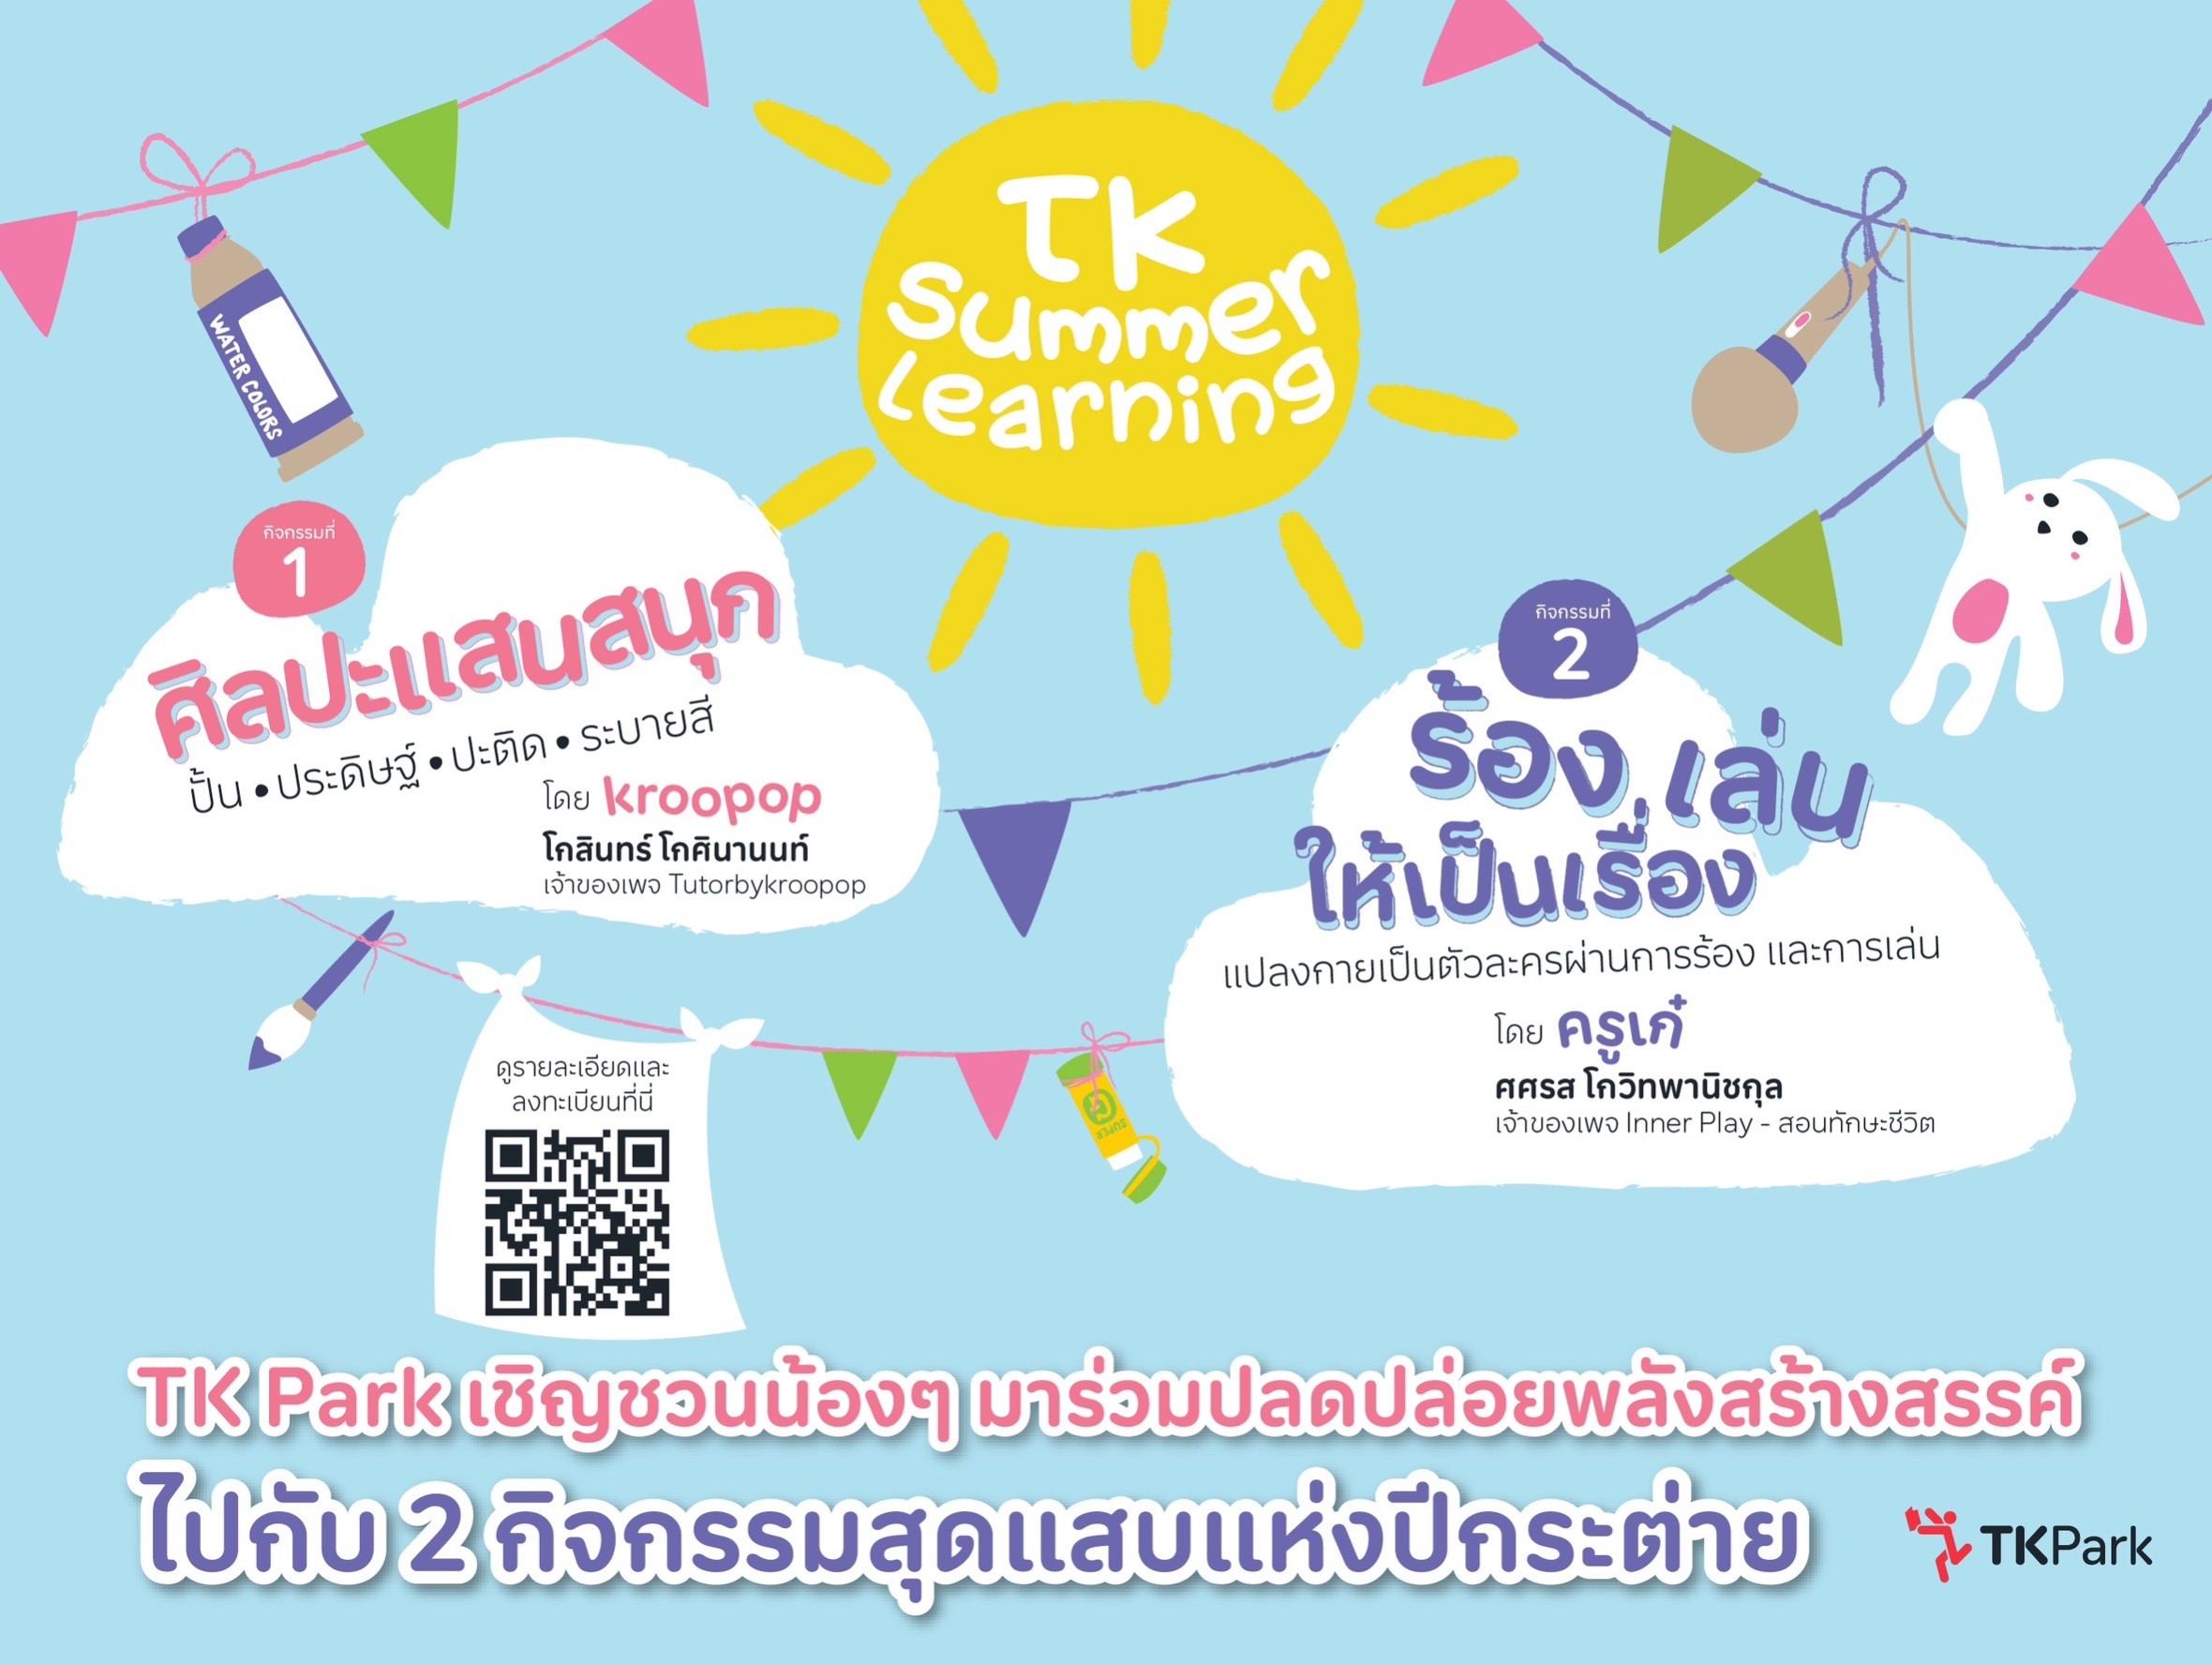 TK Park ชวนสนุกแบบสร้างสรรค์รับปิดเทอมฤดูร้อนกับกิจกรรม “TK Summer Learning”